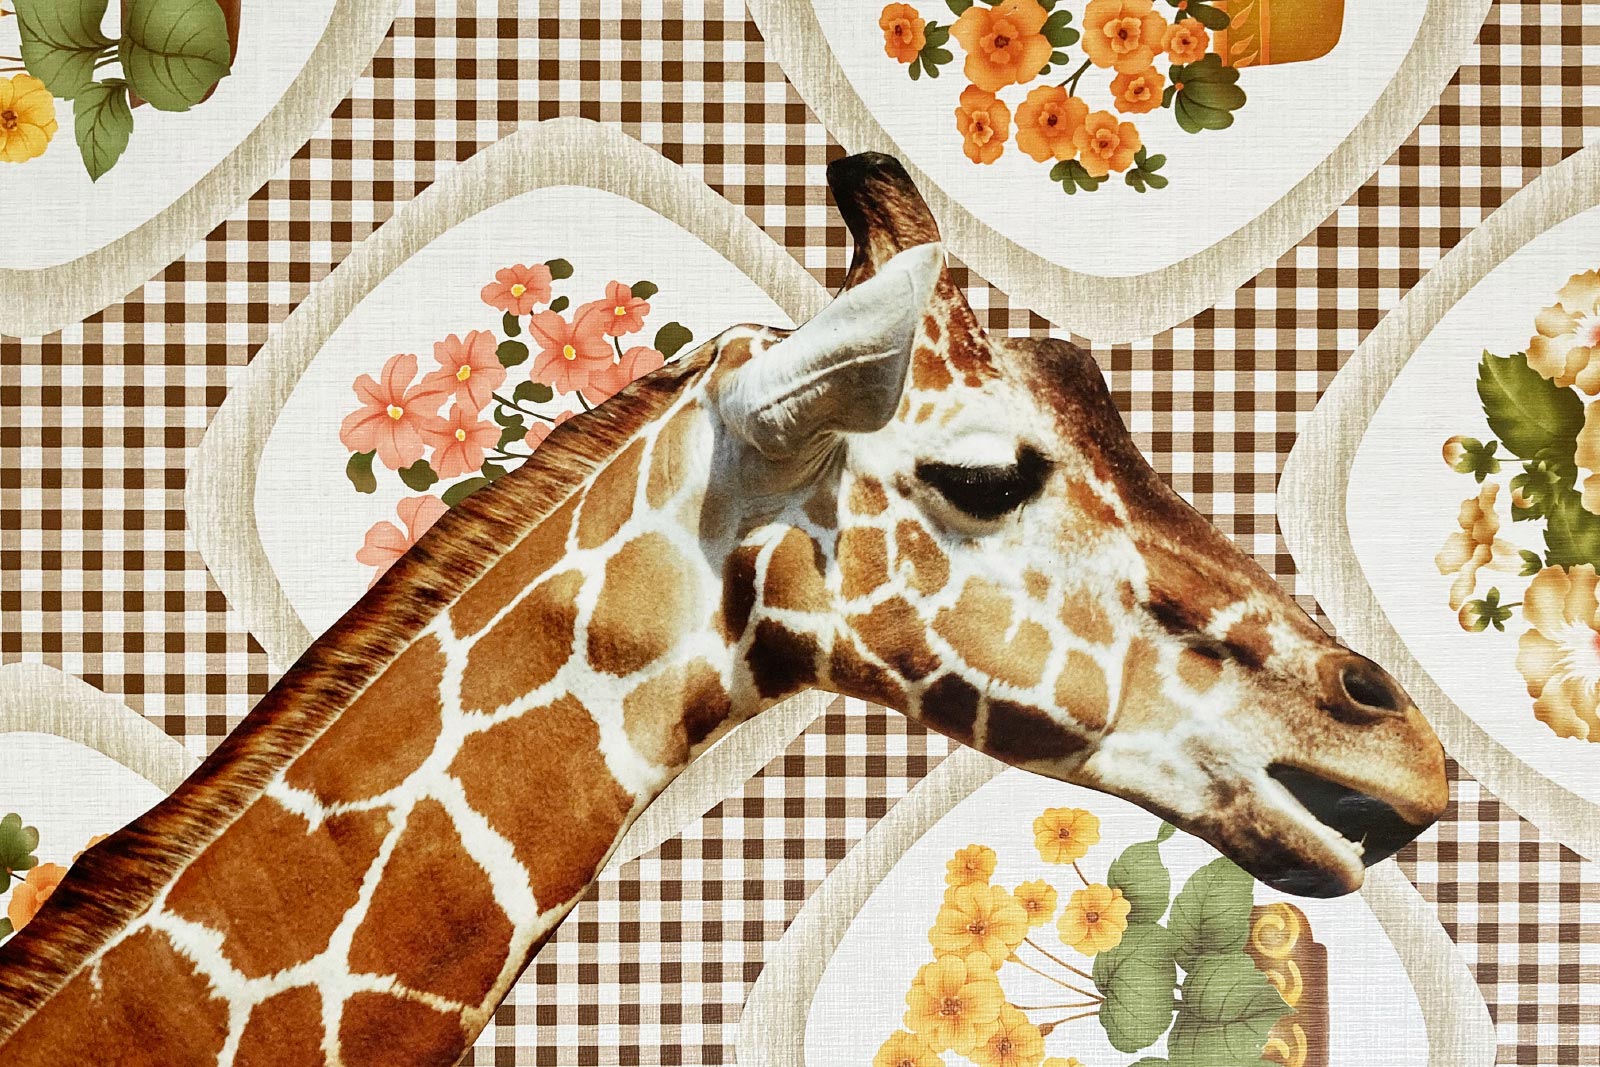 Giraffe und andere Collagen,
1991 | Collagen
Tapeten, Tierfotos von Kalenderblättern